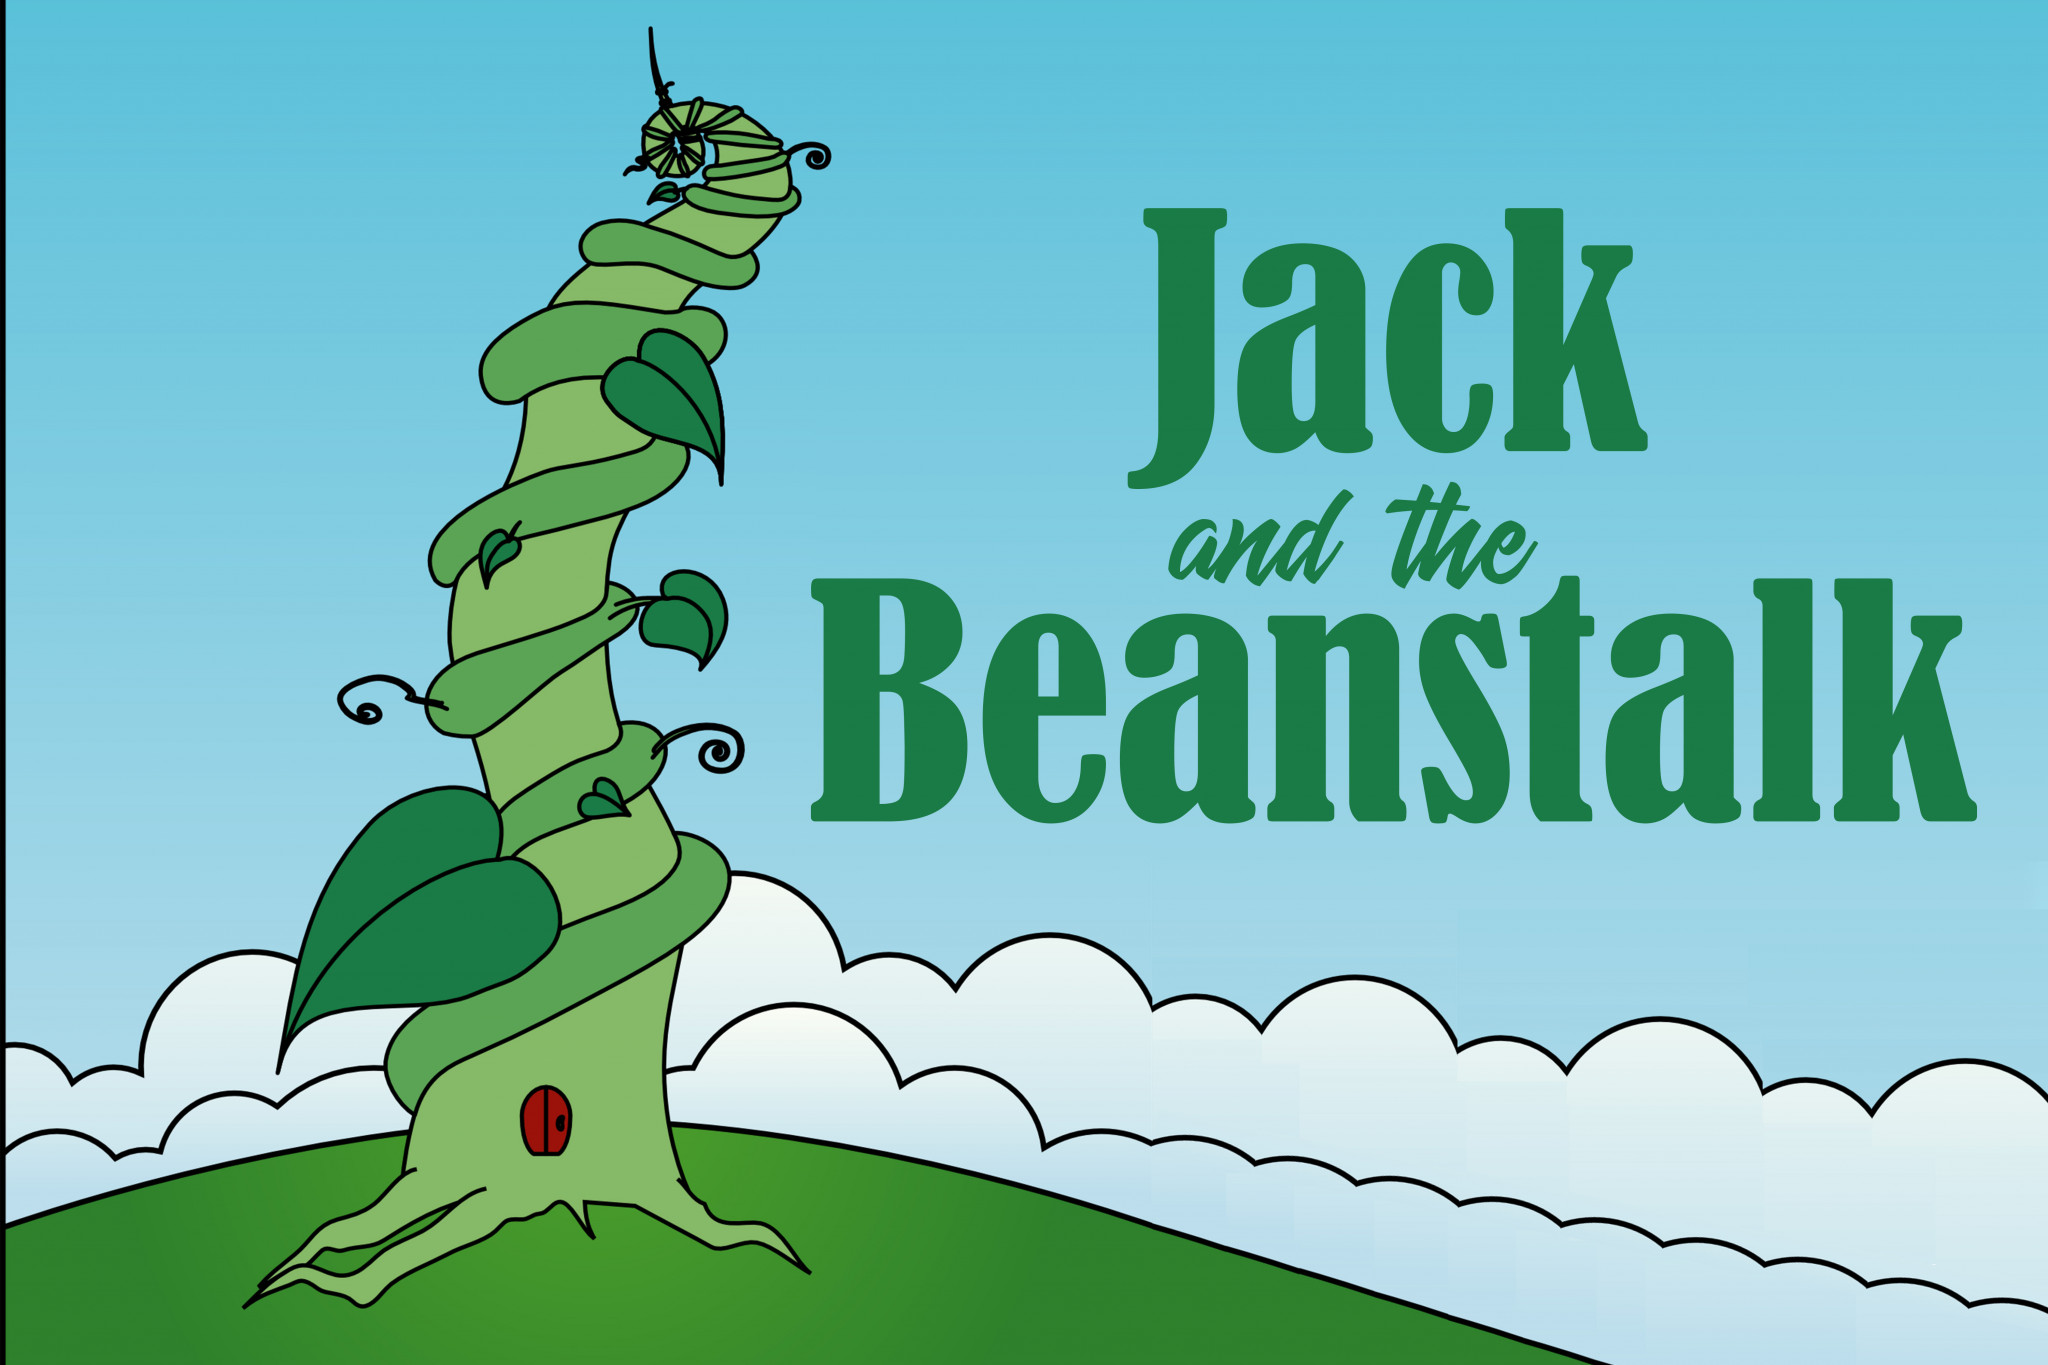 Beanstalk перевод. Beanstalk. Джек и бобовое зернышко. Jack the Beanstalk иллюстрации.